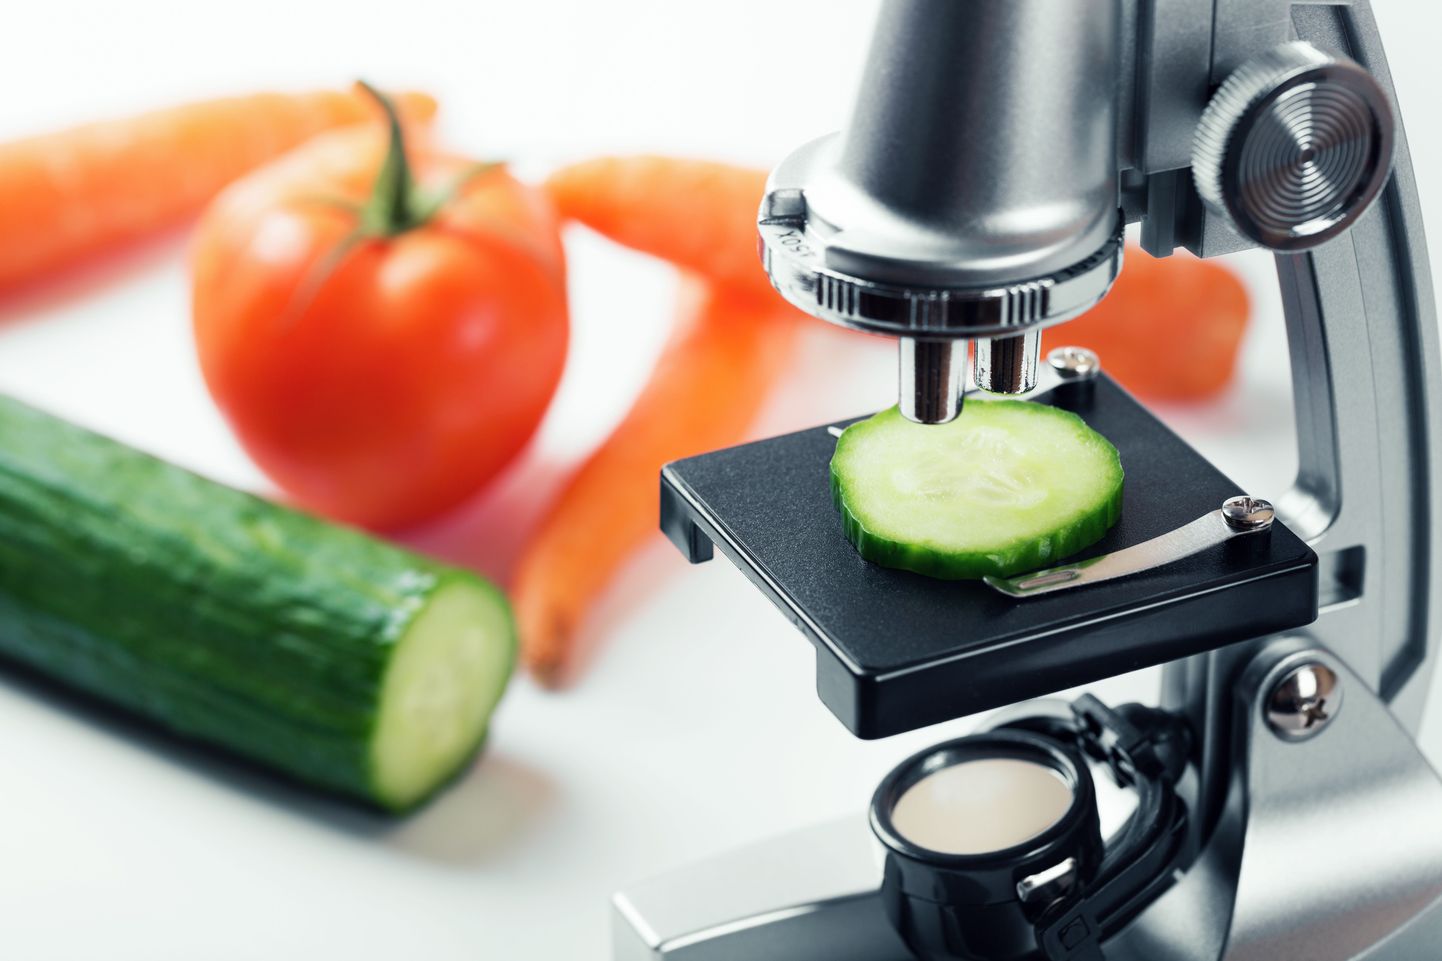 Tervislik toitumine võimaldab teadlastel uuendusi rakendada.